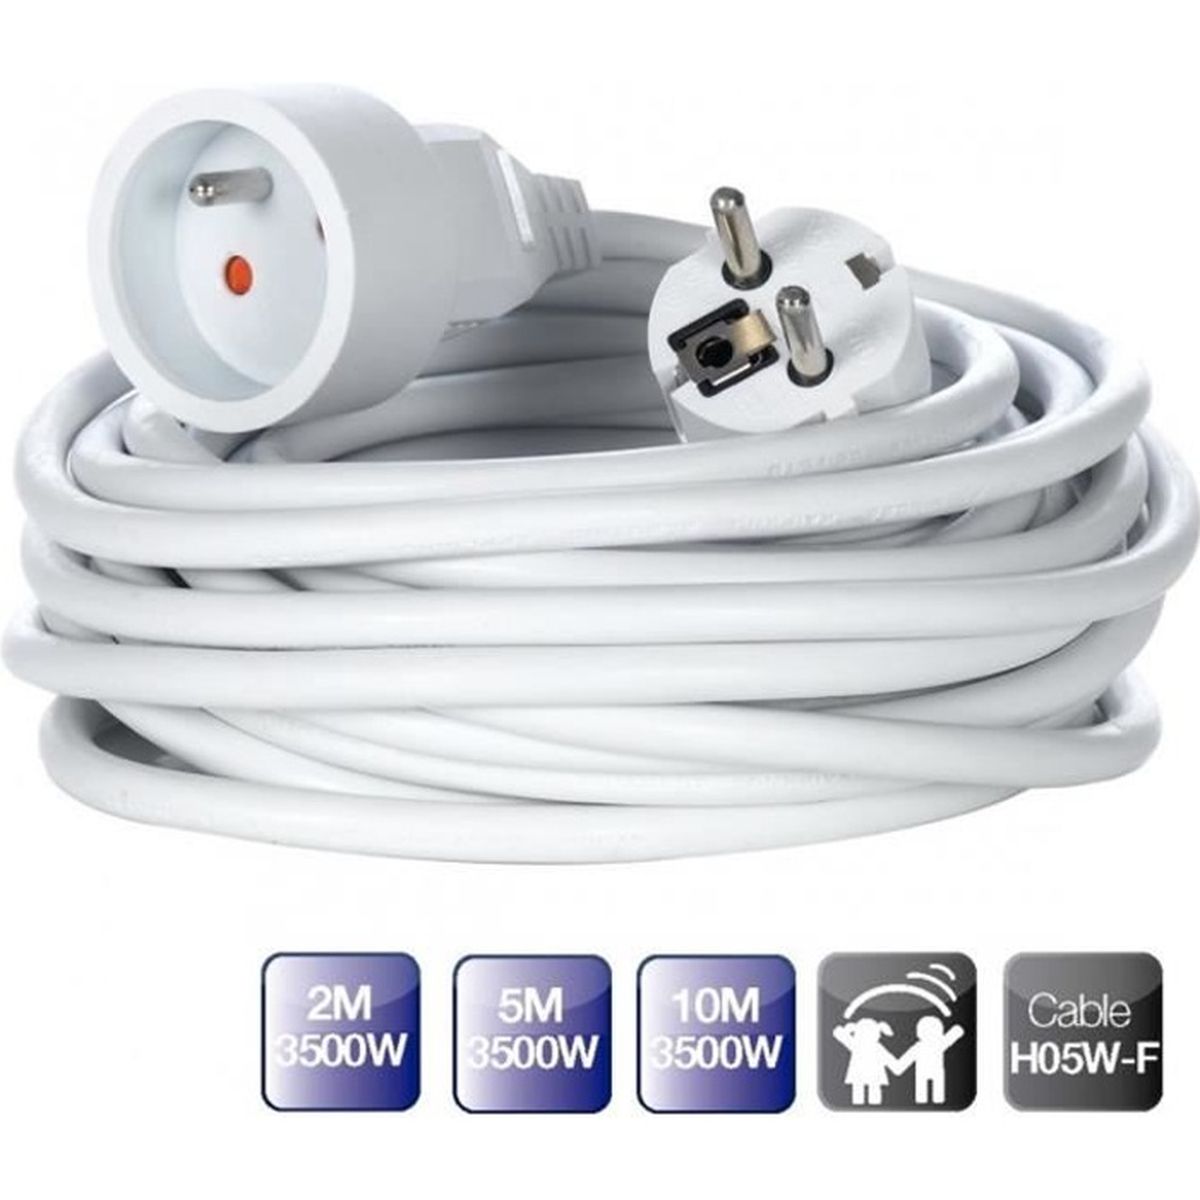 Câble électrique - 1.5 mm2 - marron - au mètre - TB00366G